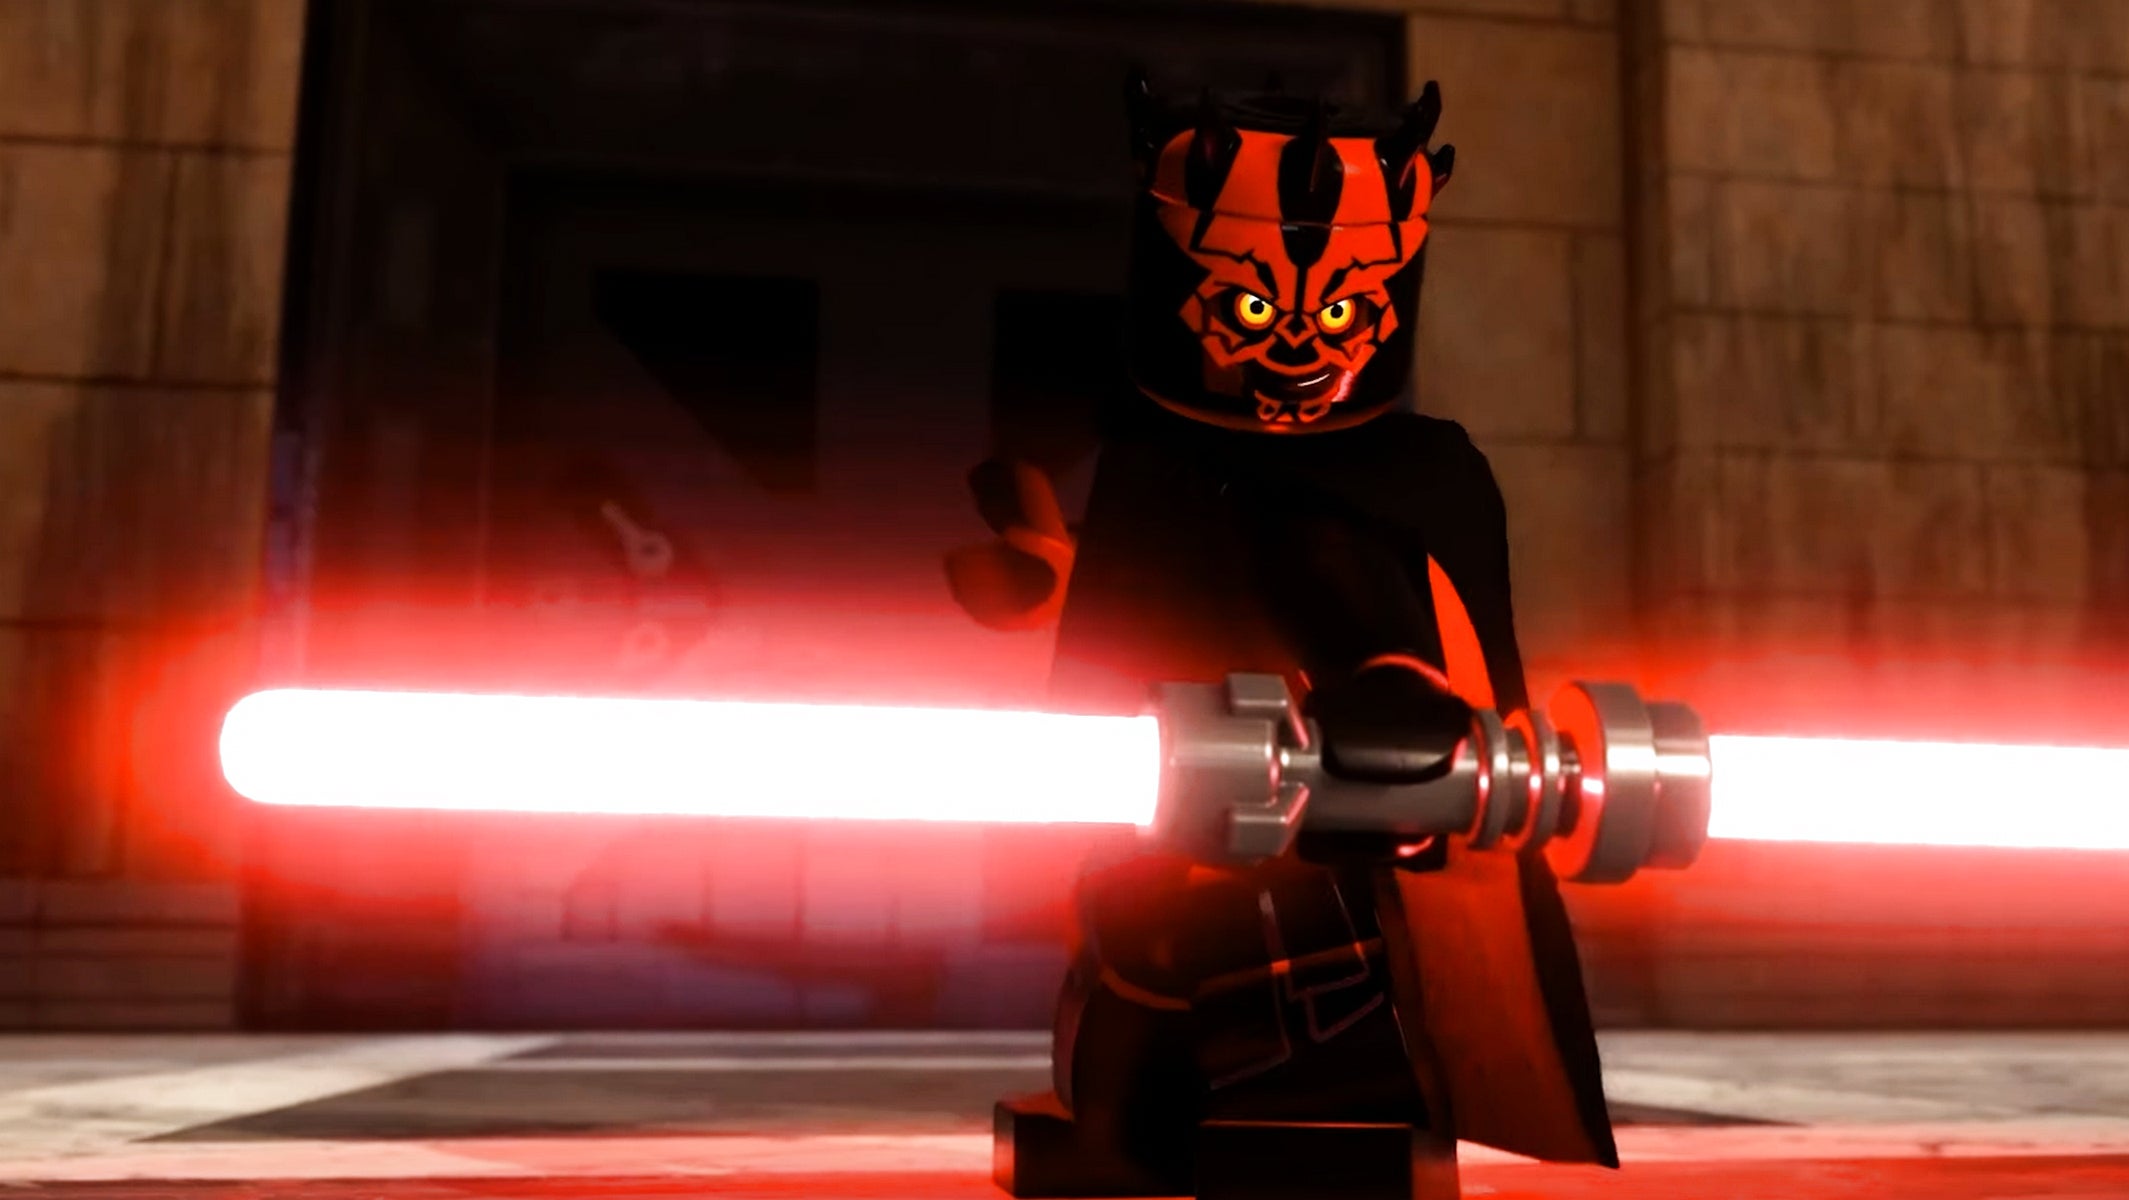 Bilder zu Lego Star Wars: Die Skywalker Saga zeigt seine dunkle Seite im neuen Trailer